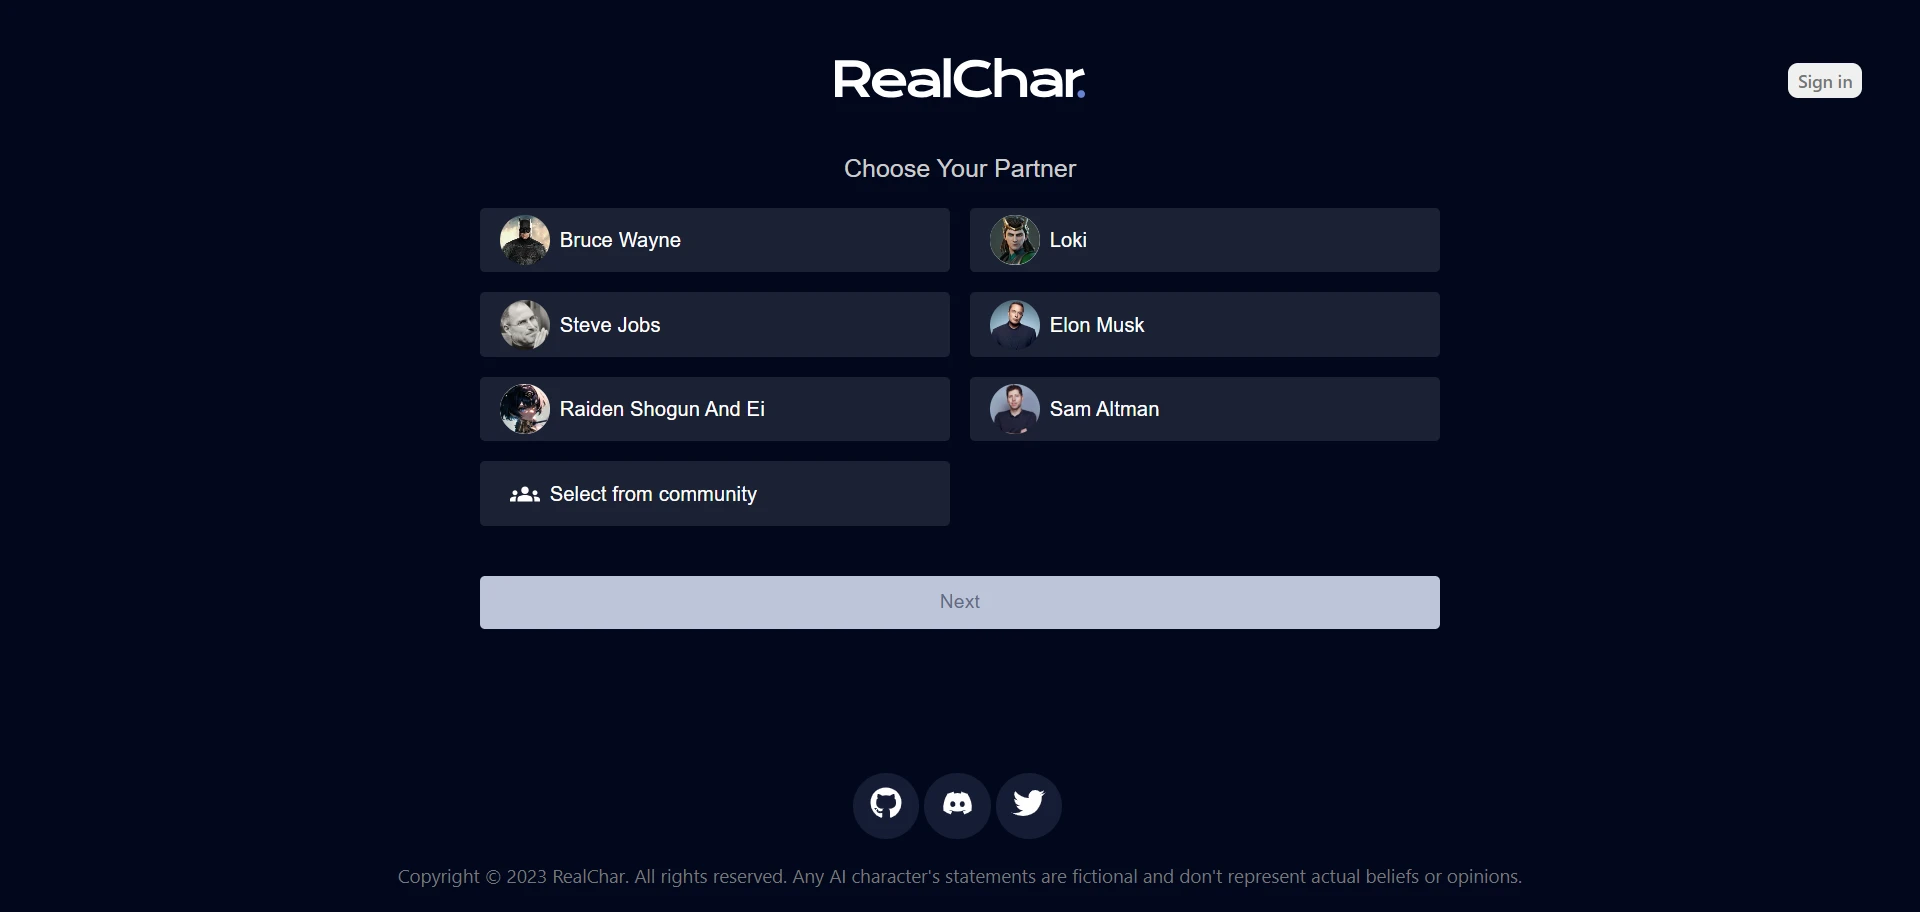 RealCharwebsite picture